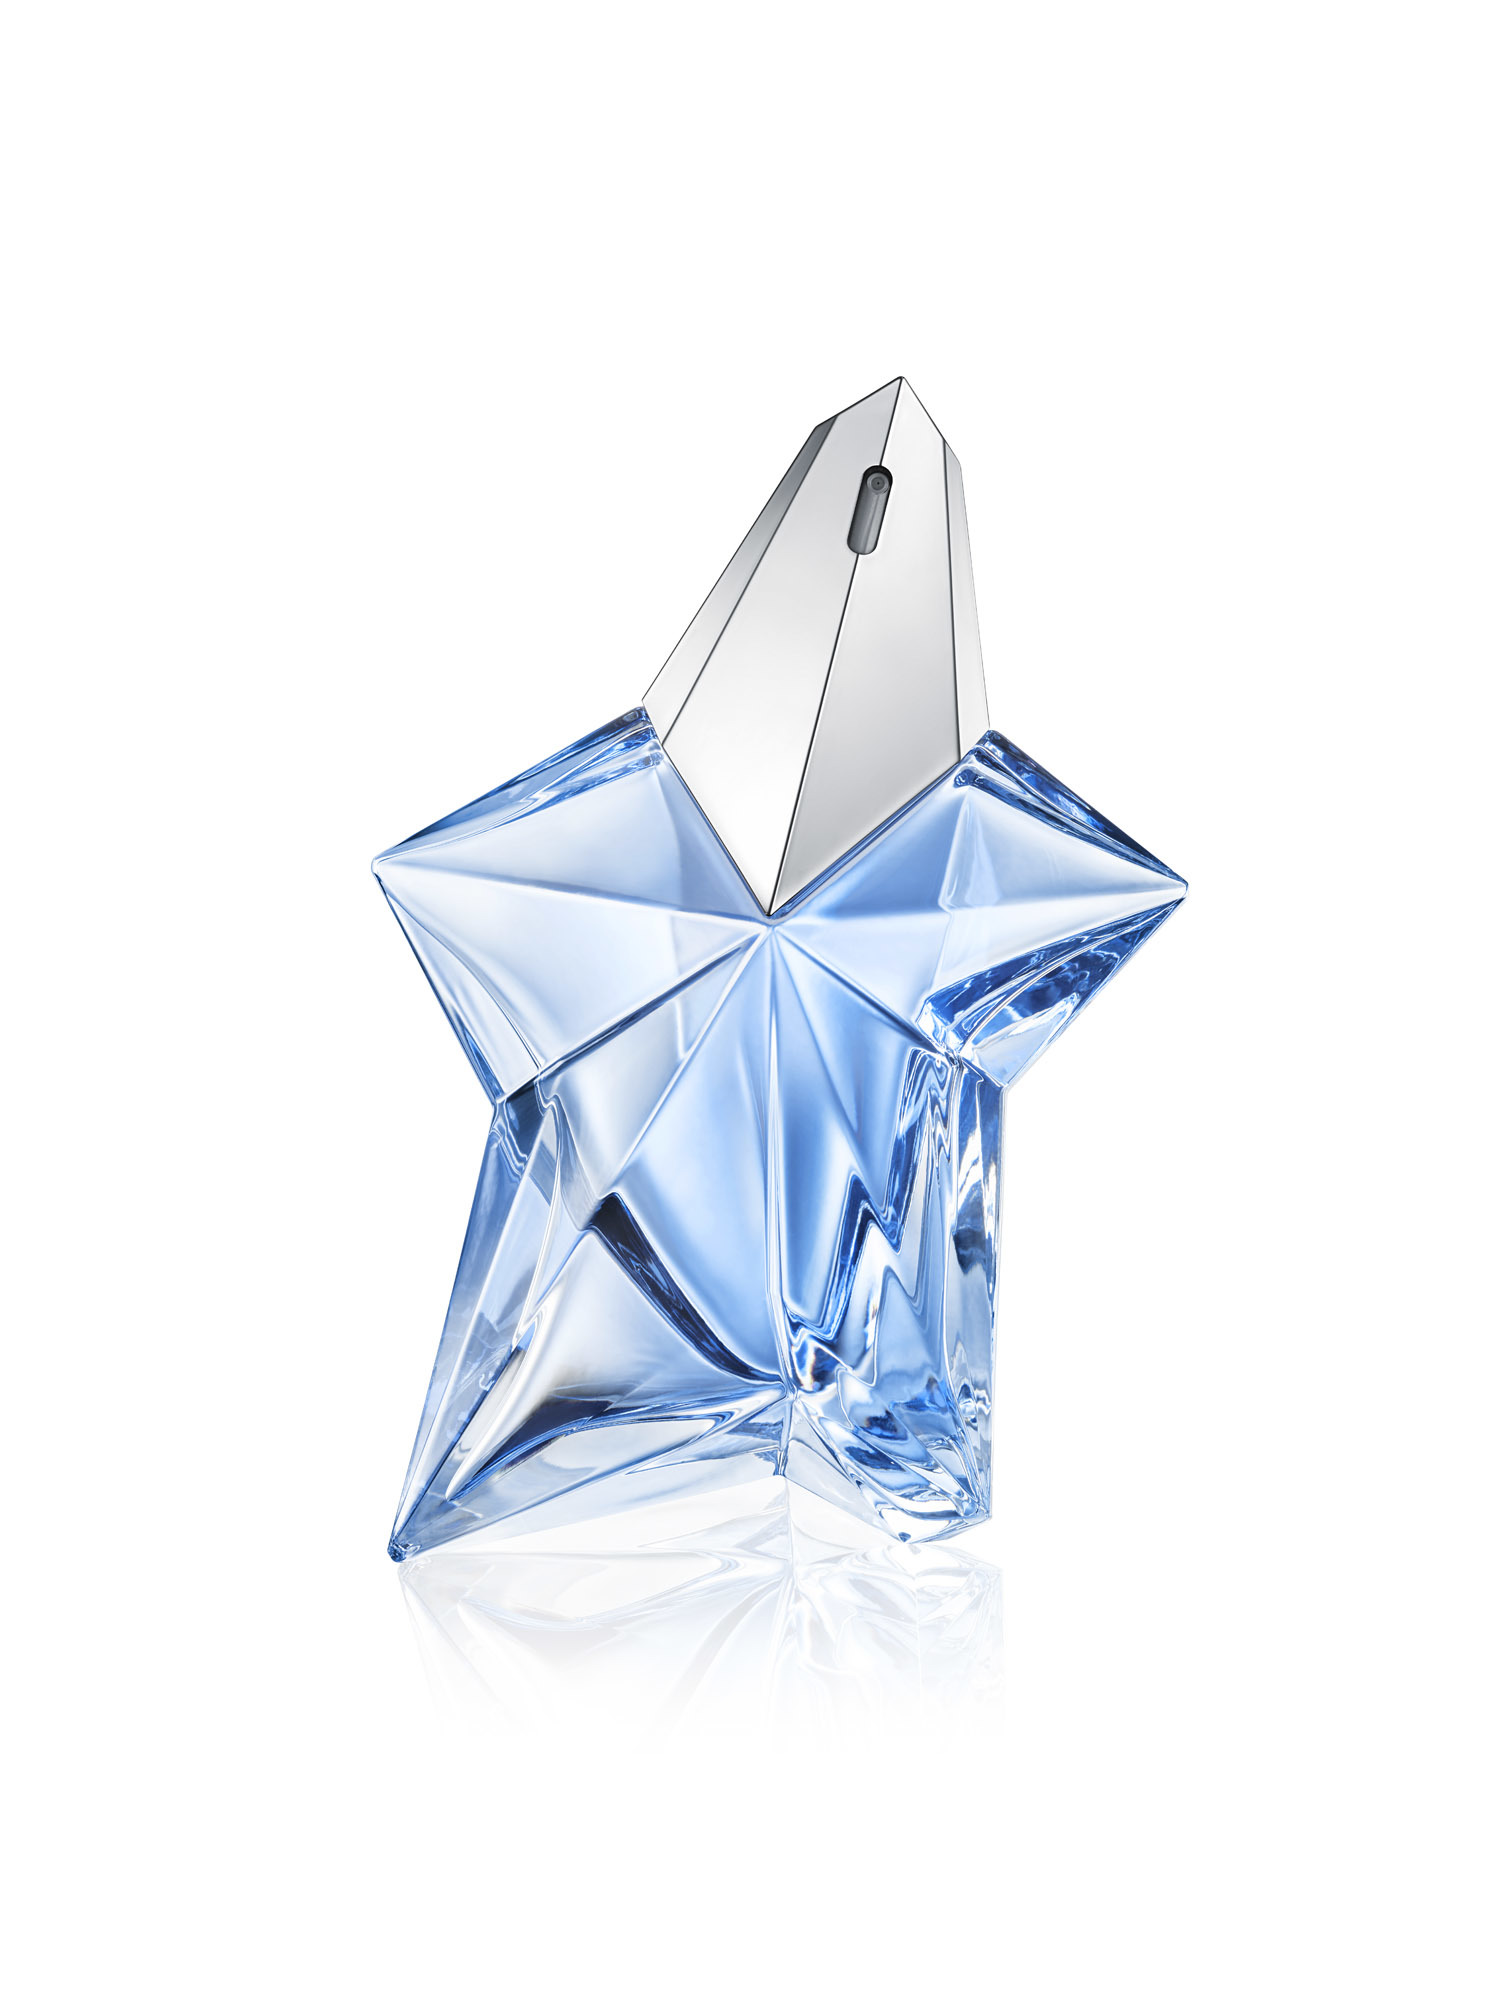 El primer perfume categorizado como dulce, Angel de Thierry Mugler, un clásico que no pasa de moda con notas de praliné (149 euros).